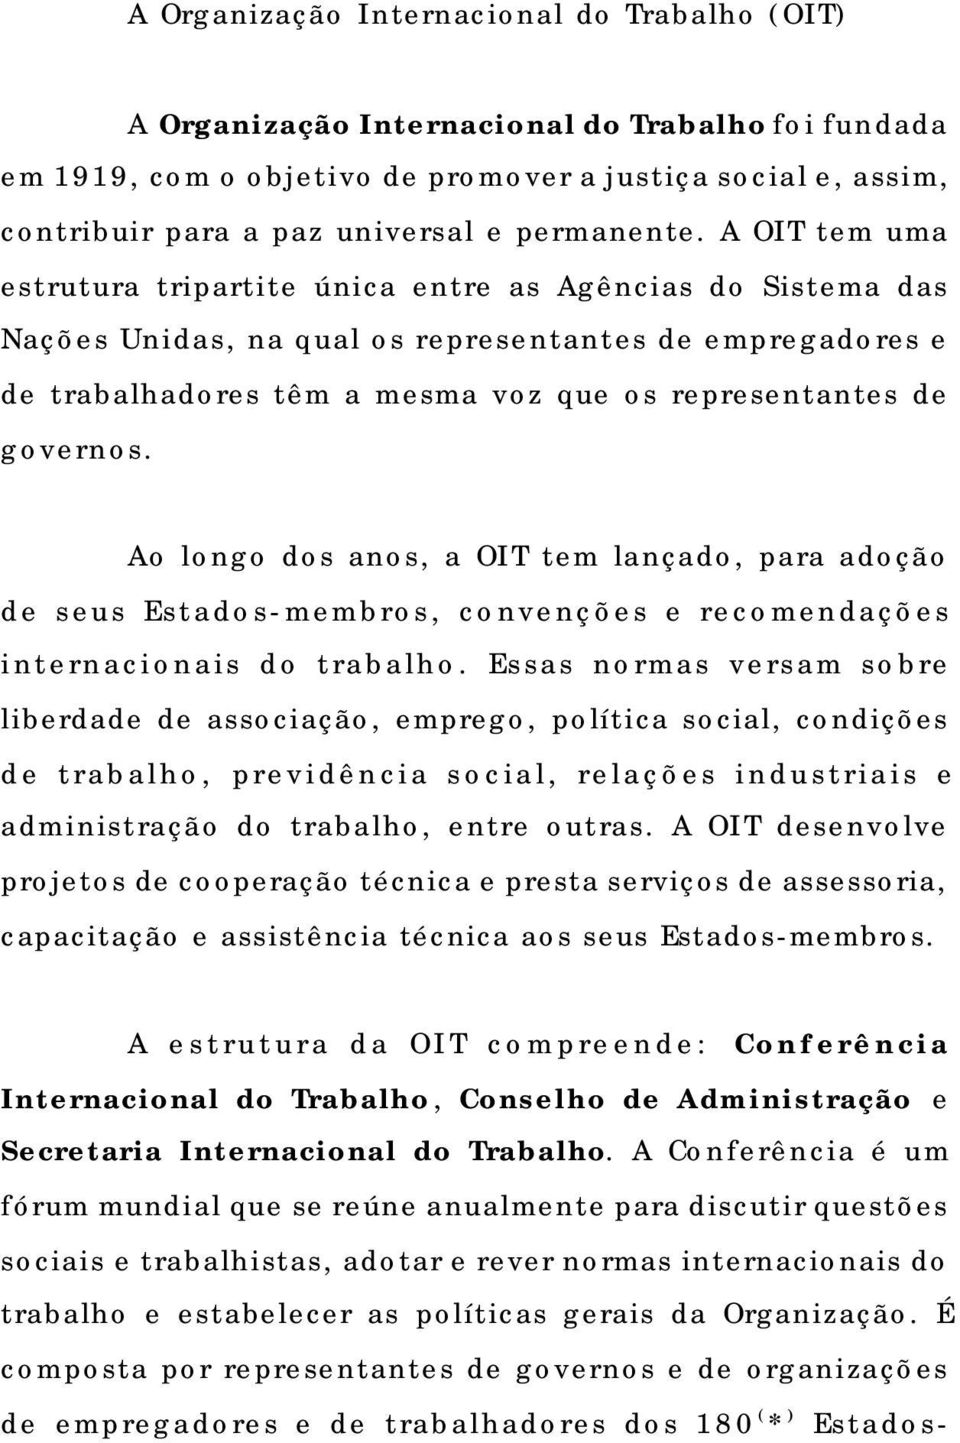 A OIT tem uma estrutura tripartite única entre as Agências do Sistema das Nações Unidas, na qual os representantes de empregadores e de trabalhadores têm a mesma voz que os representantes de governos.